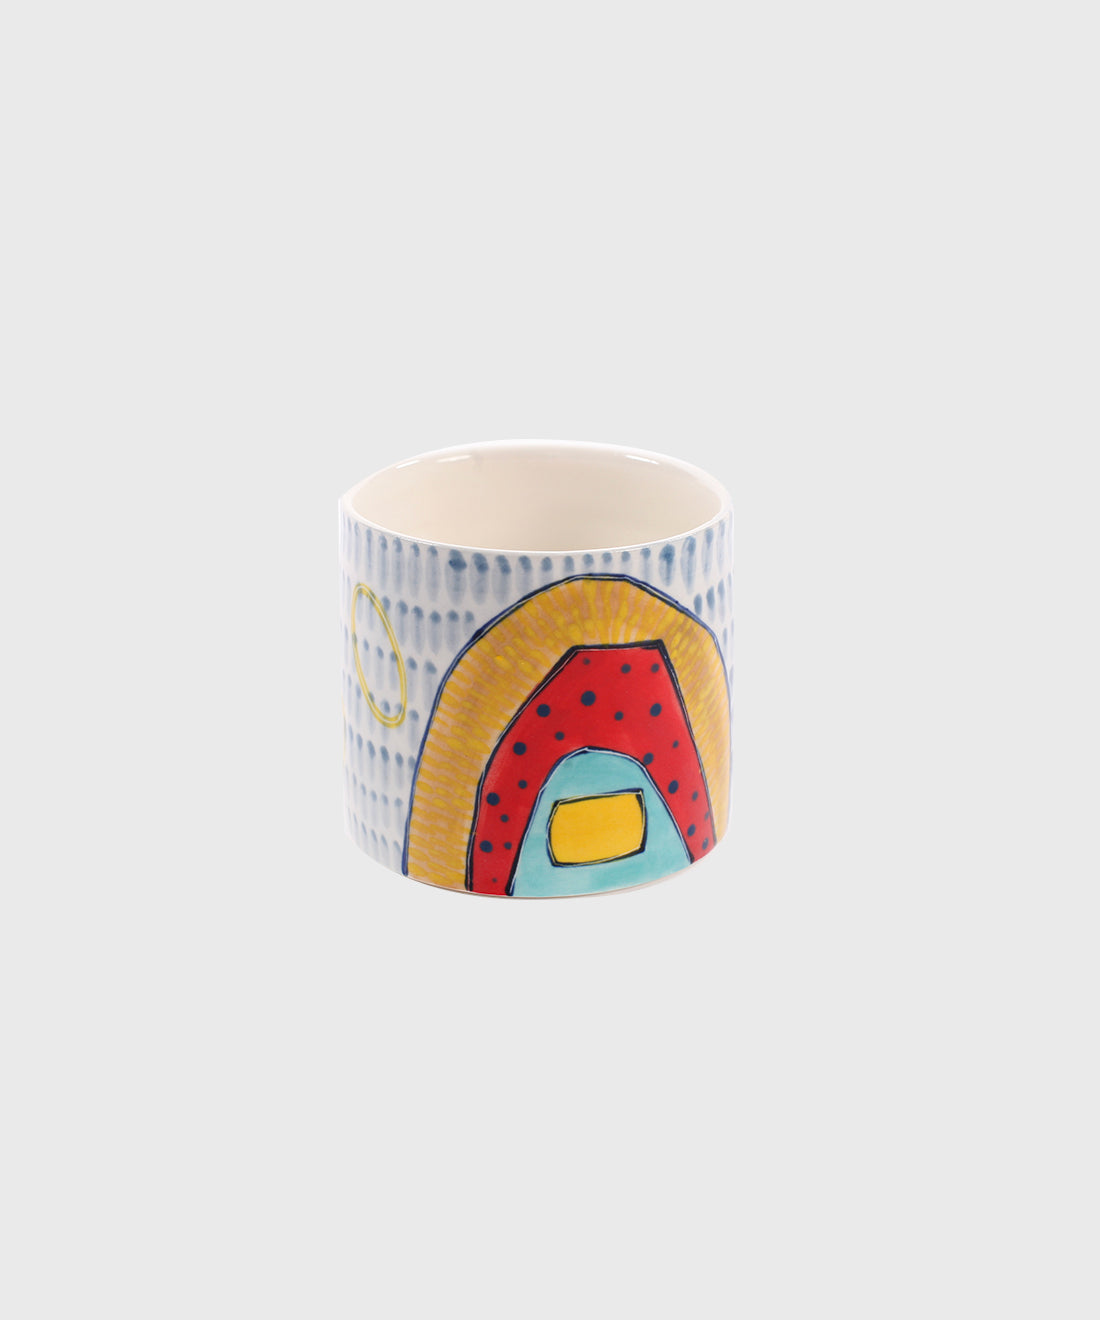 Colourful Porcelain Cup, 7